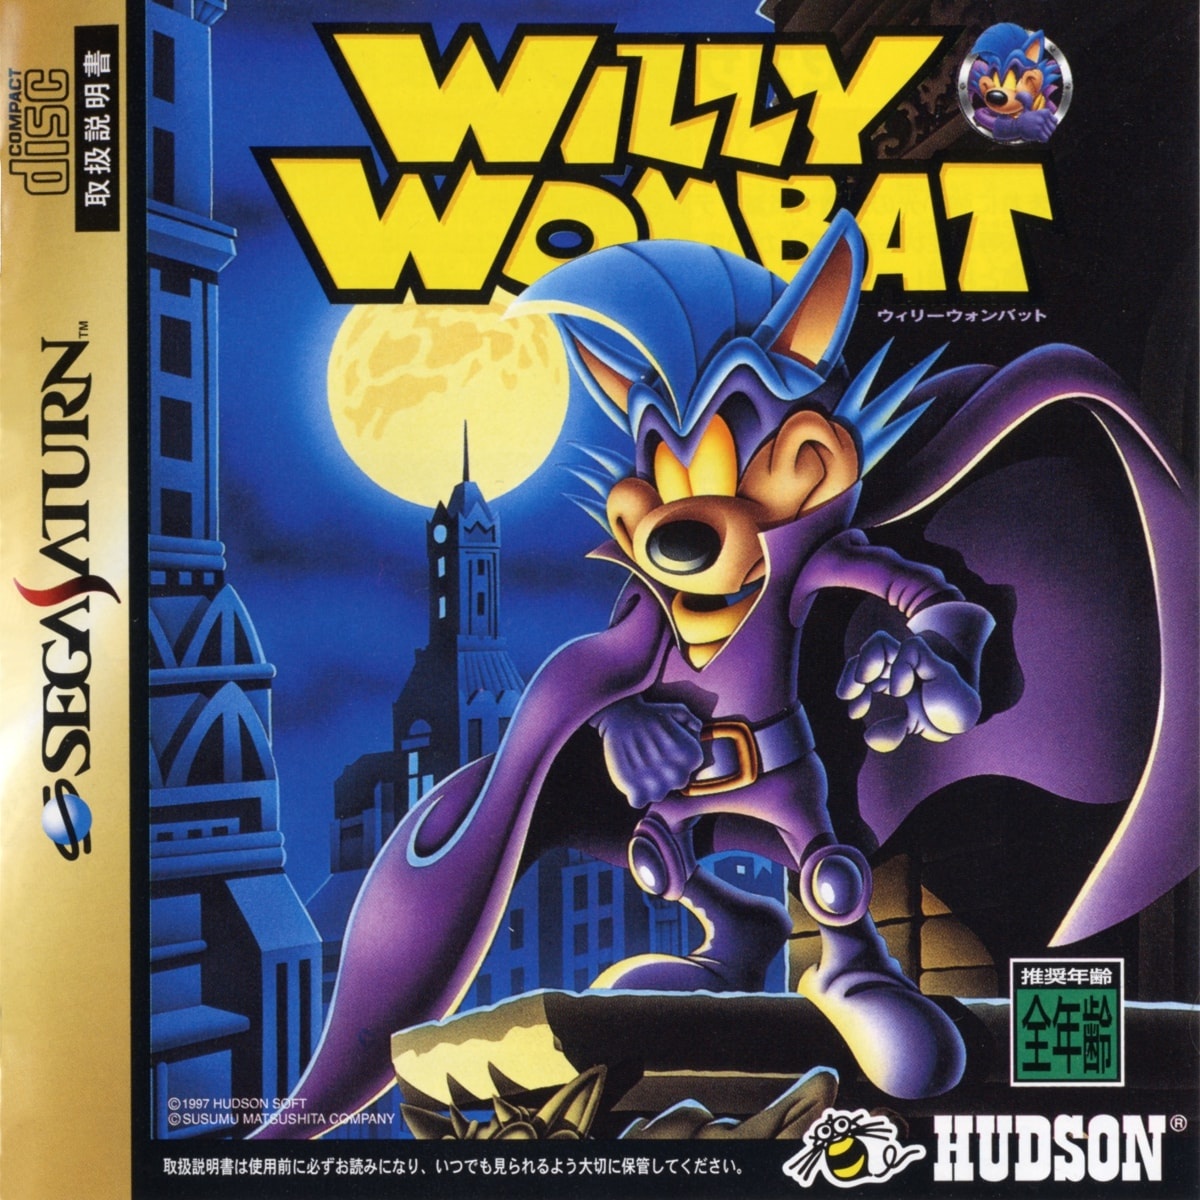 Capa do jogo Willy Wombat